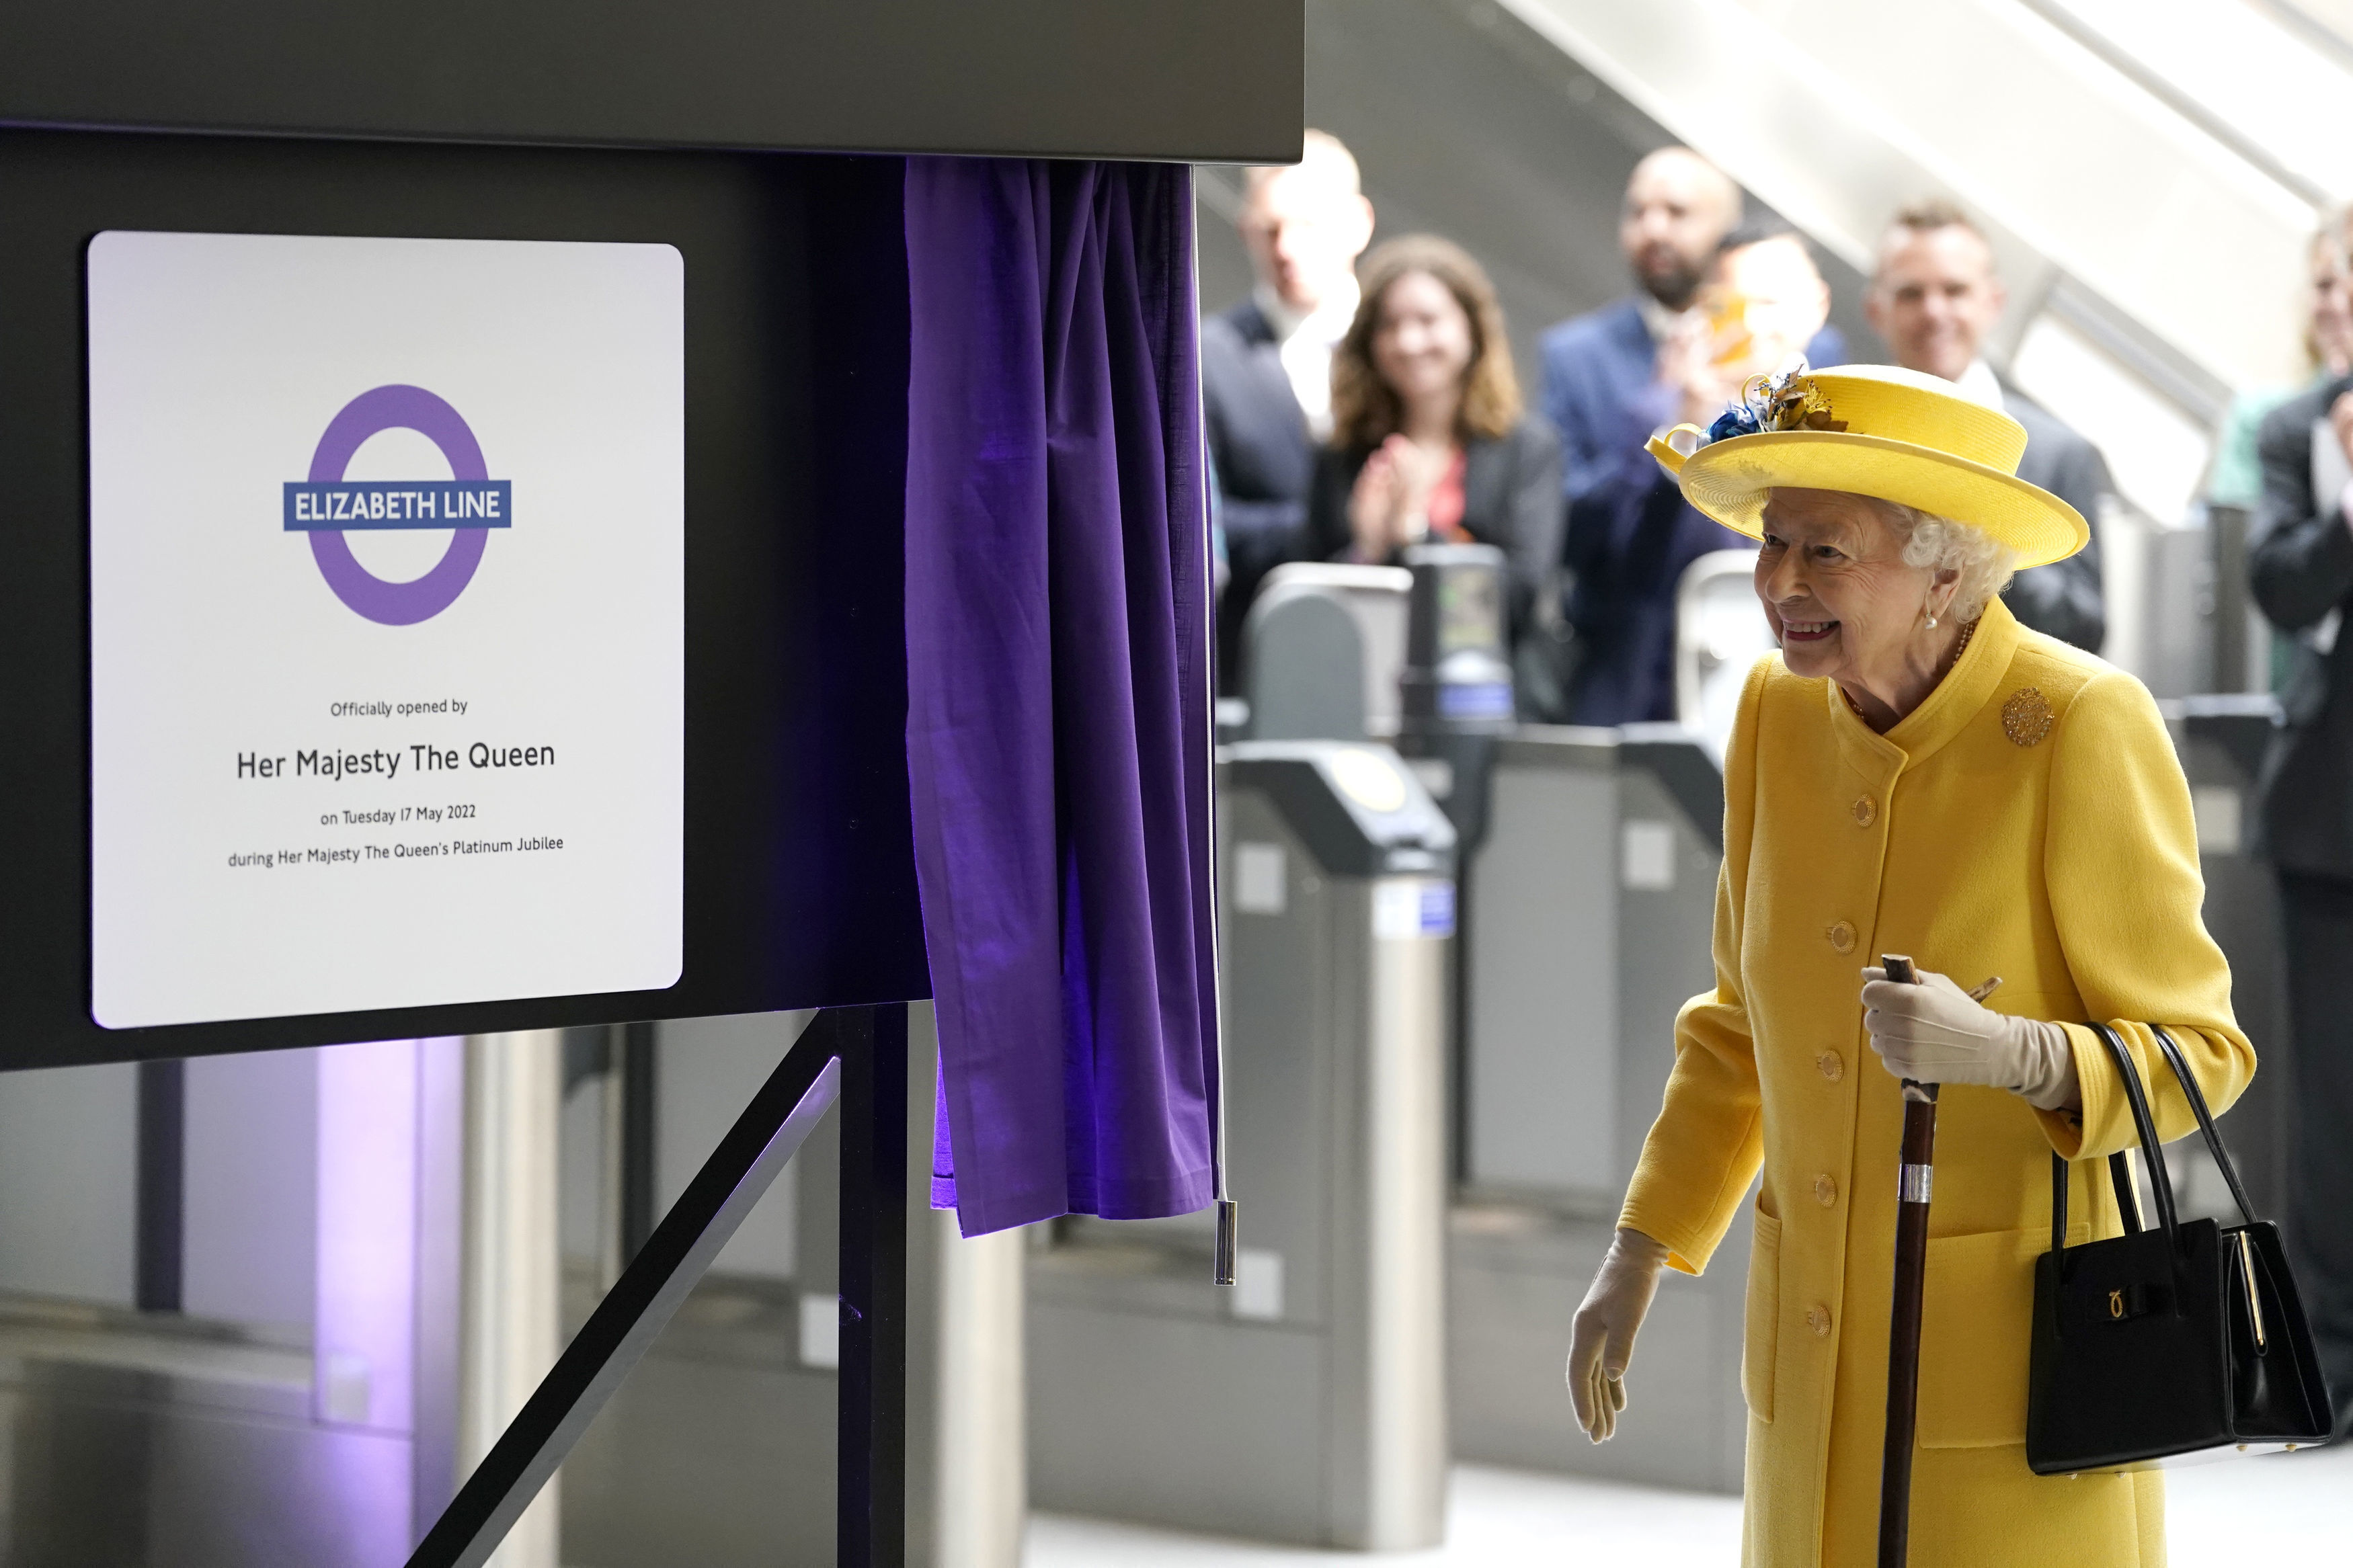 Tras la inauguración de una línea con el nombre de Isabel II, habrá una huelga en el metro de Londres durante el jubileo de la reina